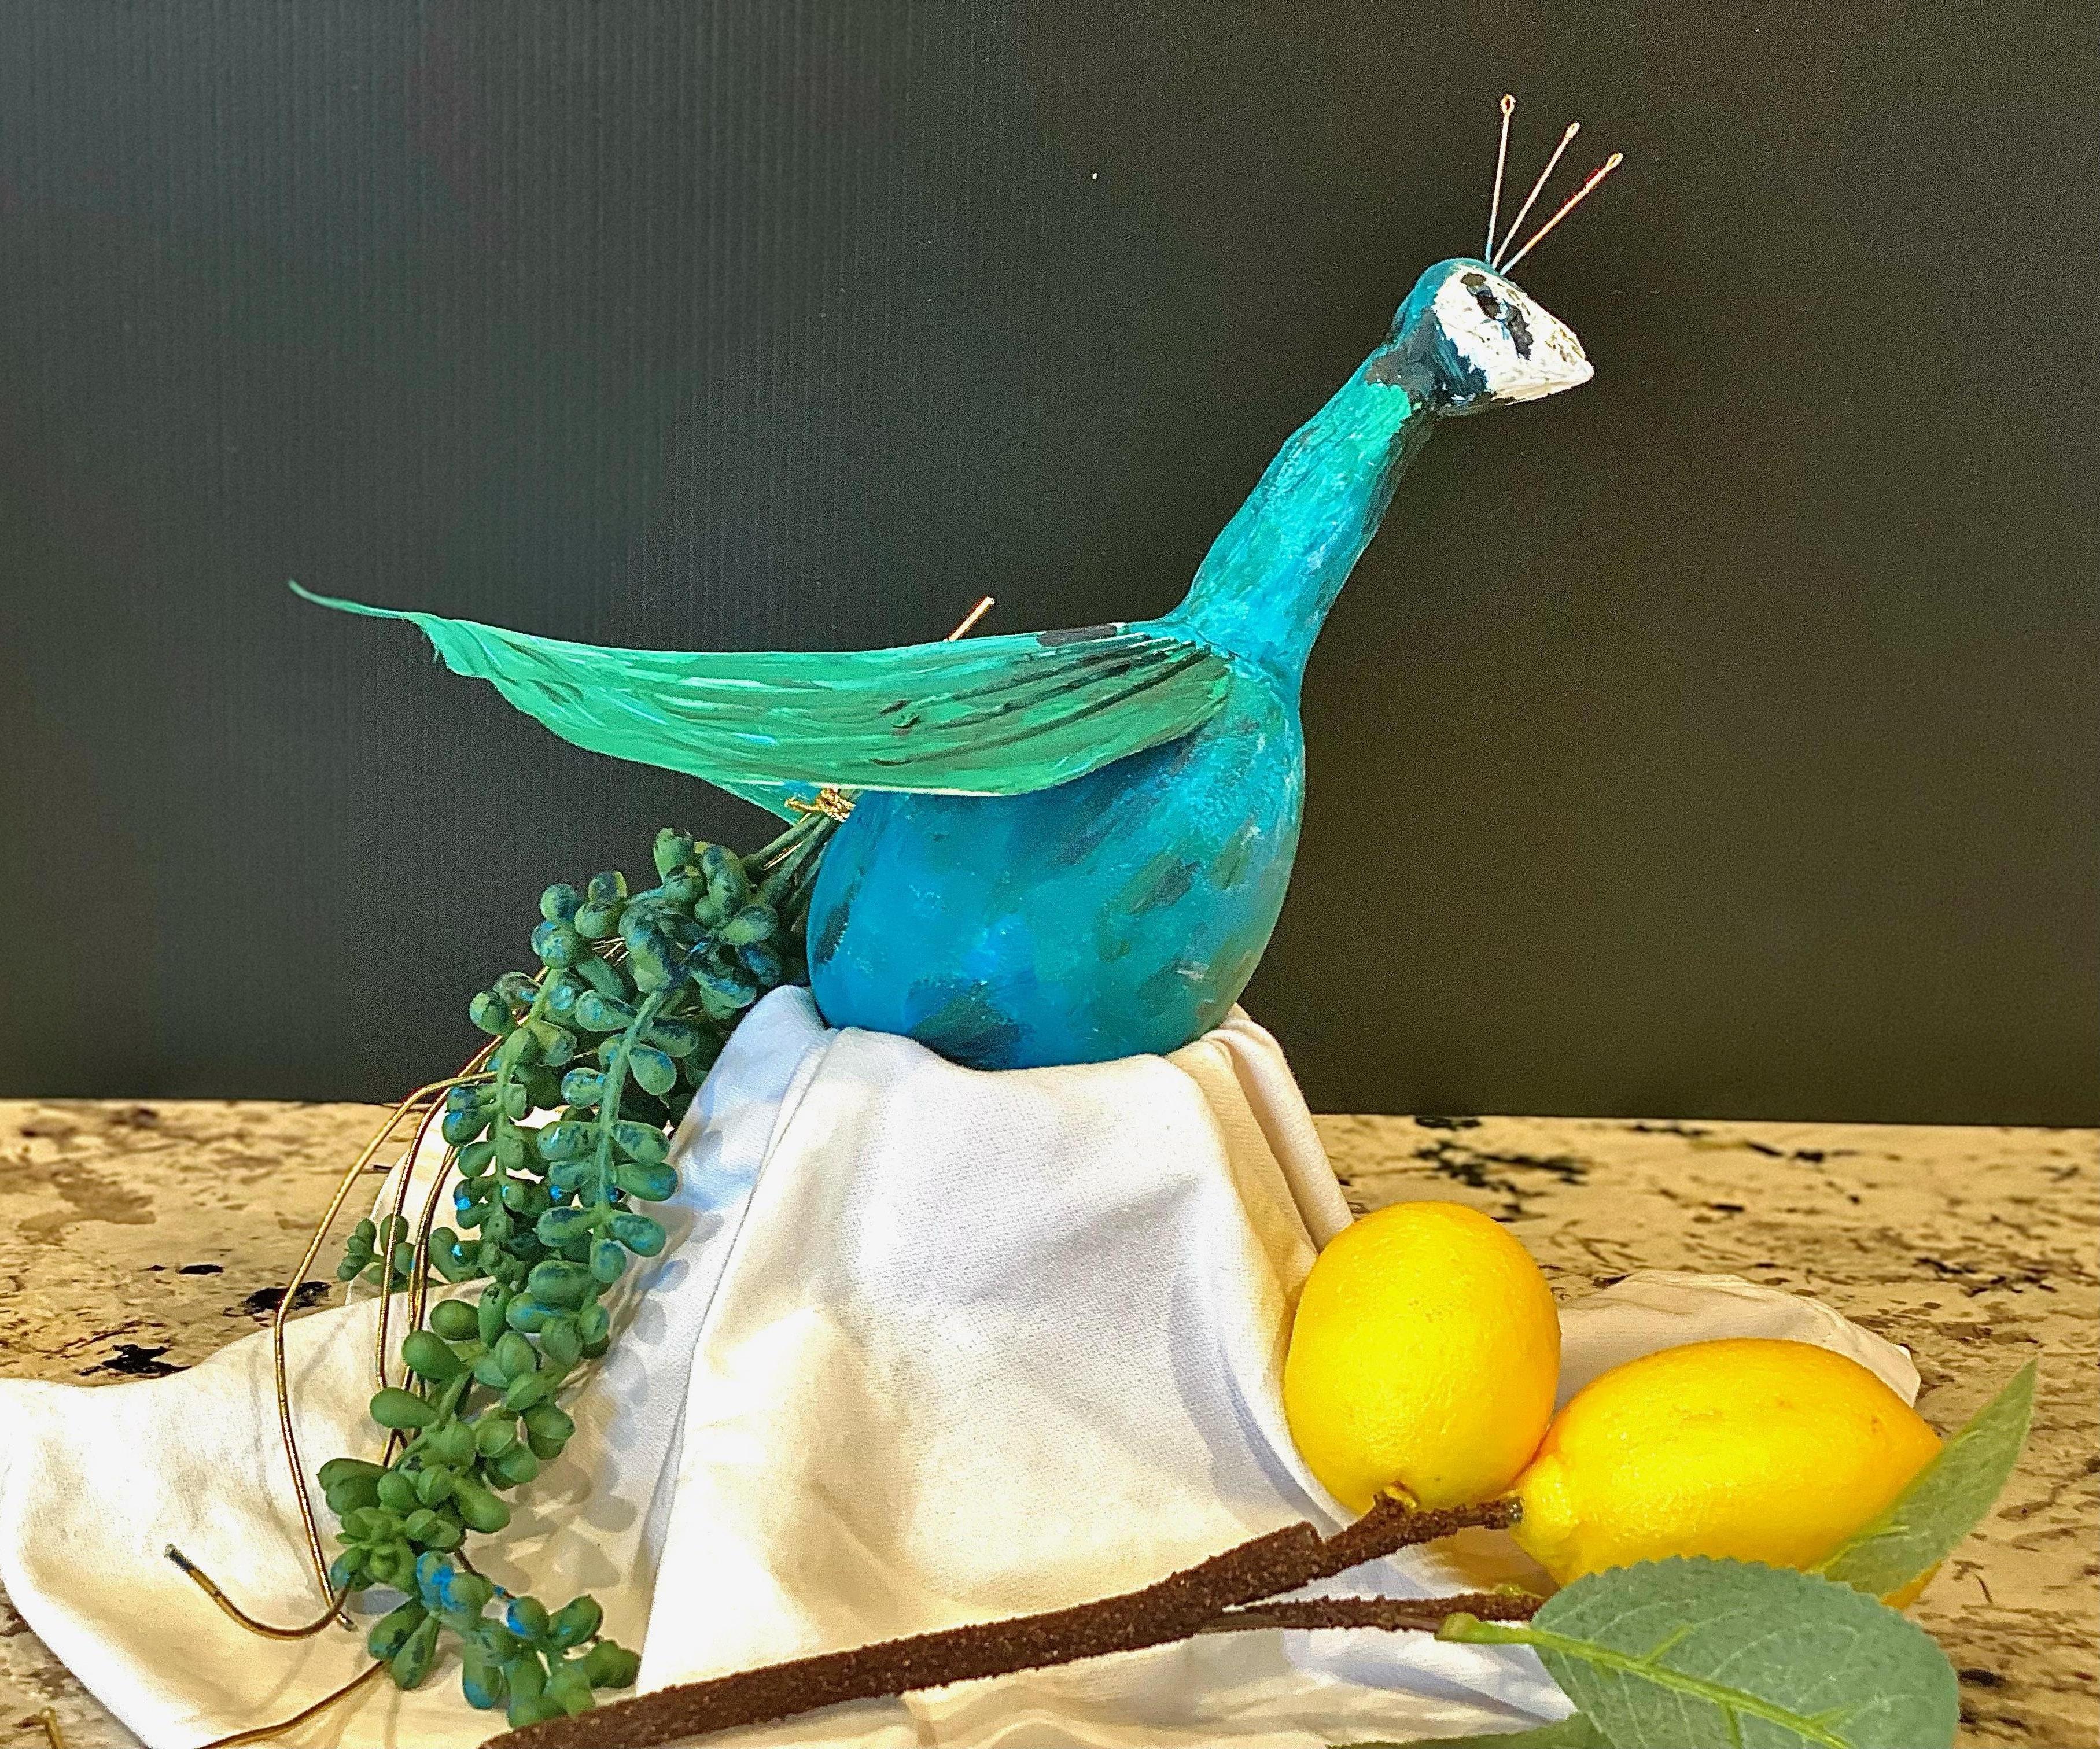 How to Make a Miniature Peacock